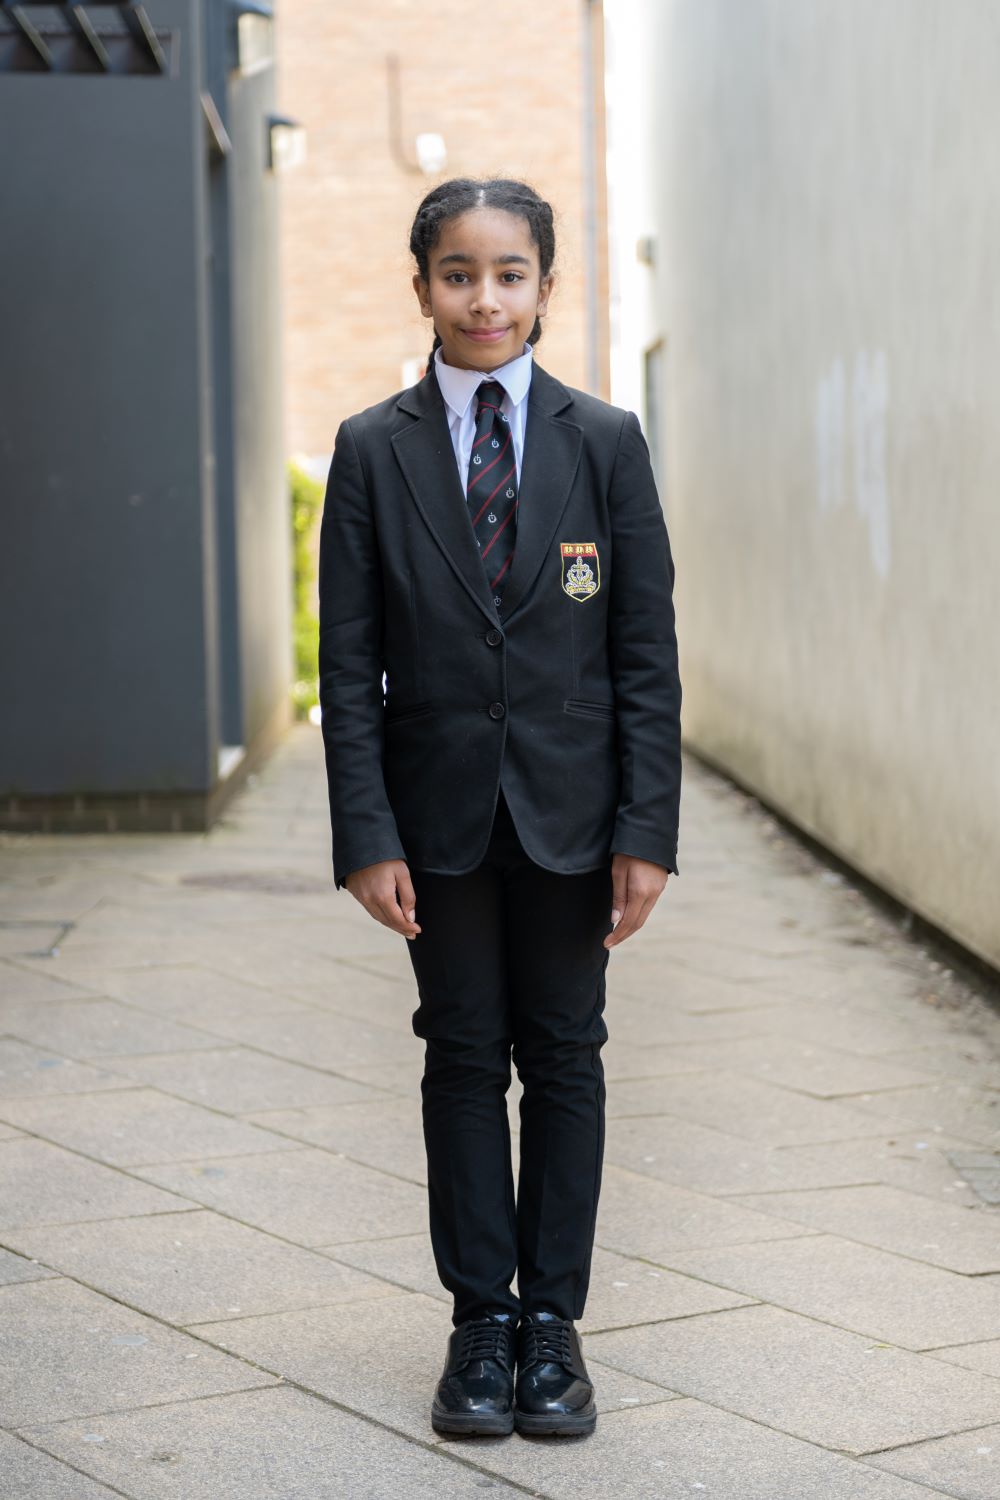 School Uniform Shop UK: Buy Kids' School Clothes Online Now